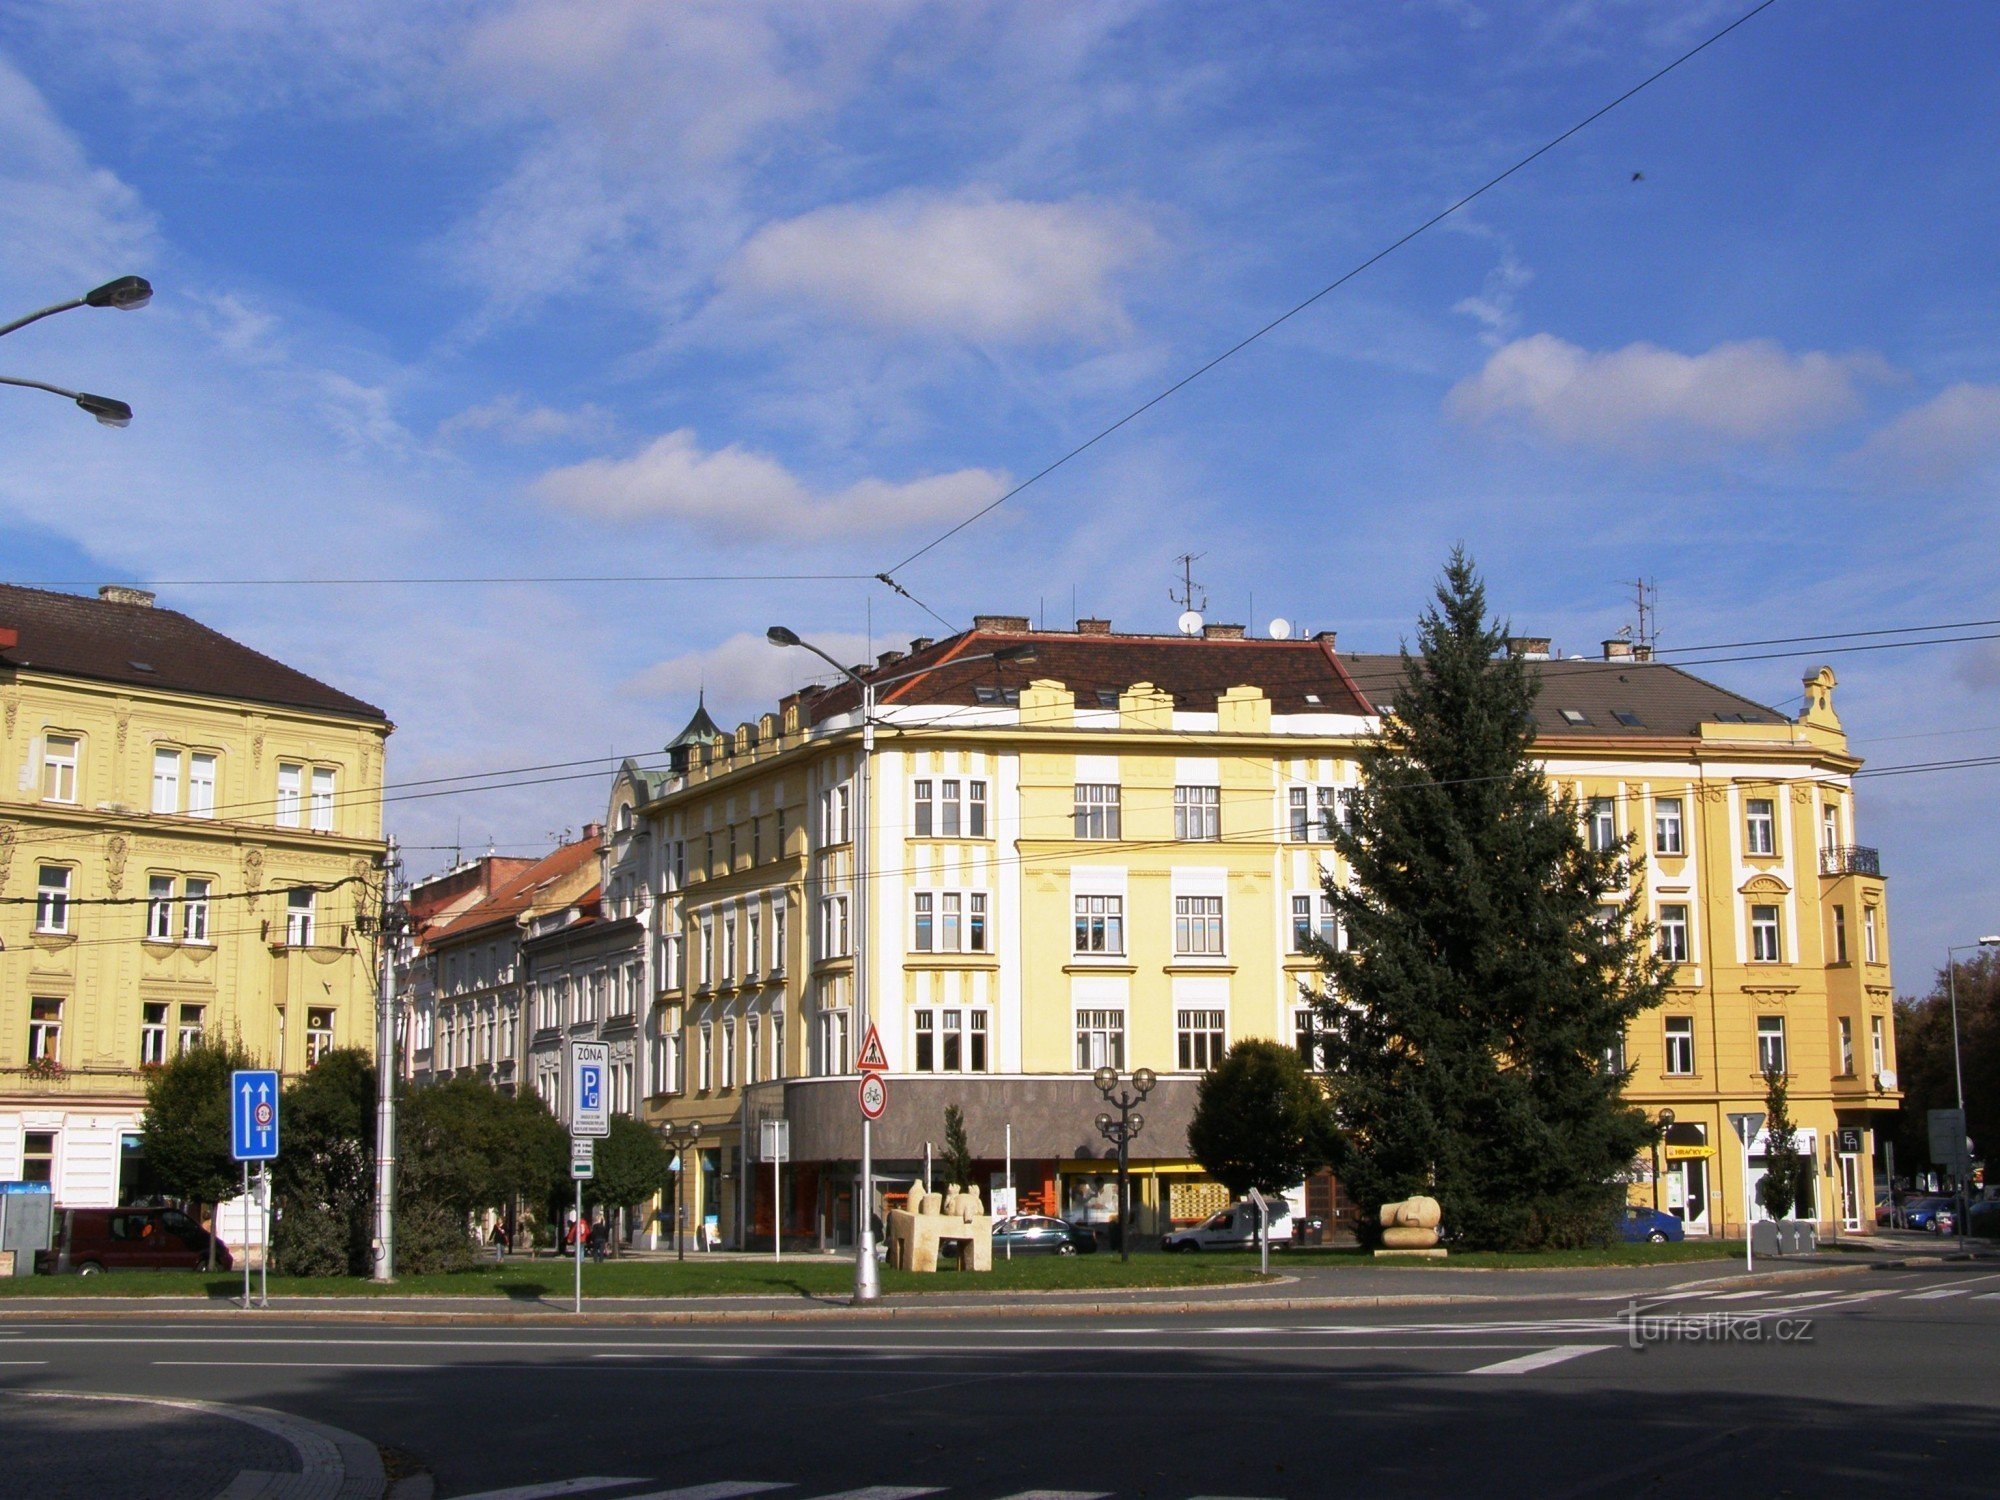 Hradec Králové - Szabadság tér